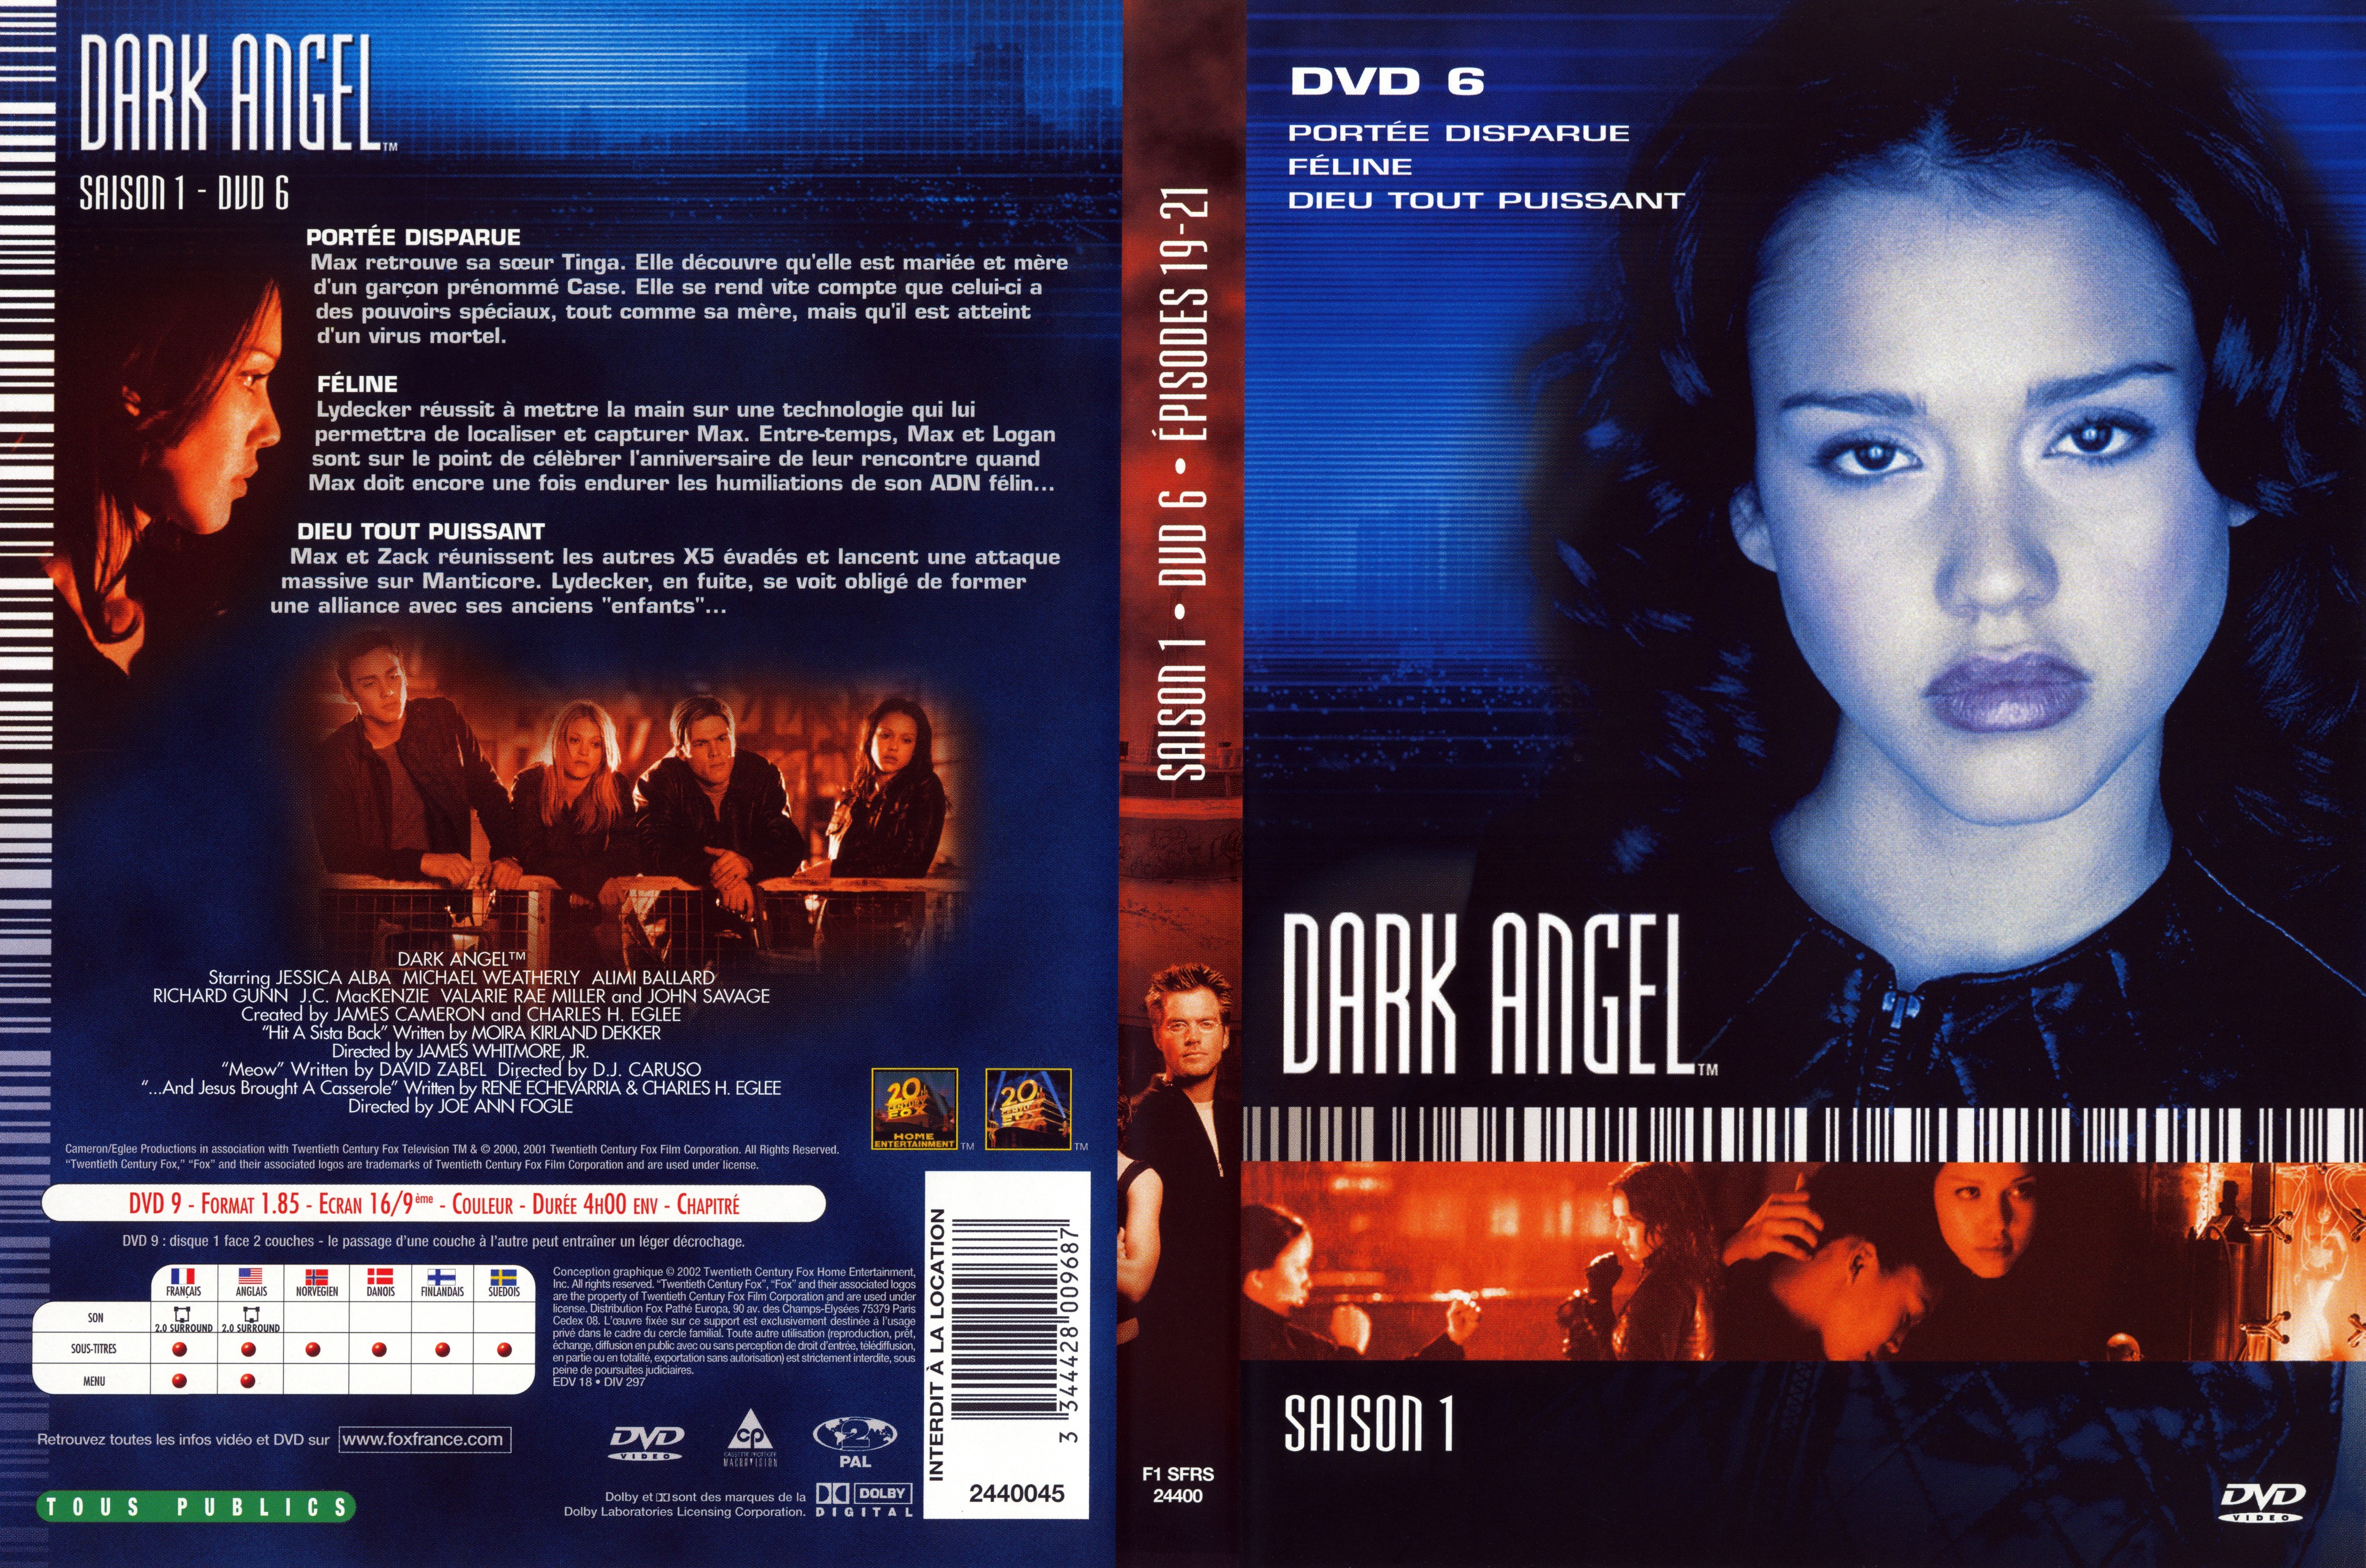 Jaquette DVD Dark Angel Saison 1 DVD 6